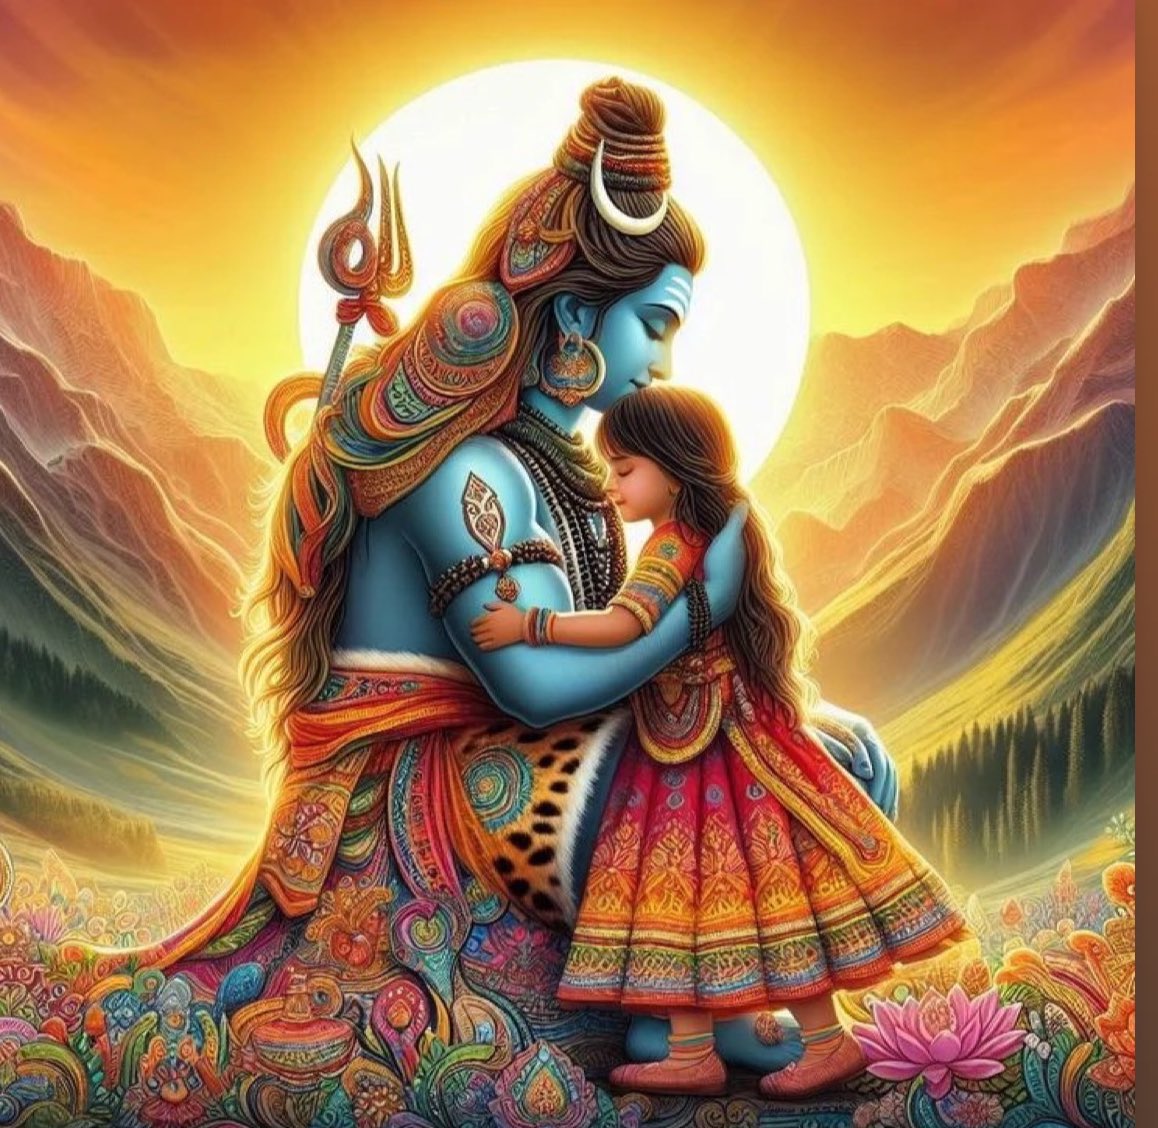 जो किसी का दिल दुखा के सुख की तलाश में है , वो बहुत बड़ी ग़लतफ़ामी में है ।।🙏🏻 सुप्रभात 🌷 हर हर महादेव 🙏🏻 #mahadev